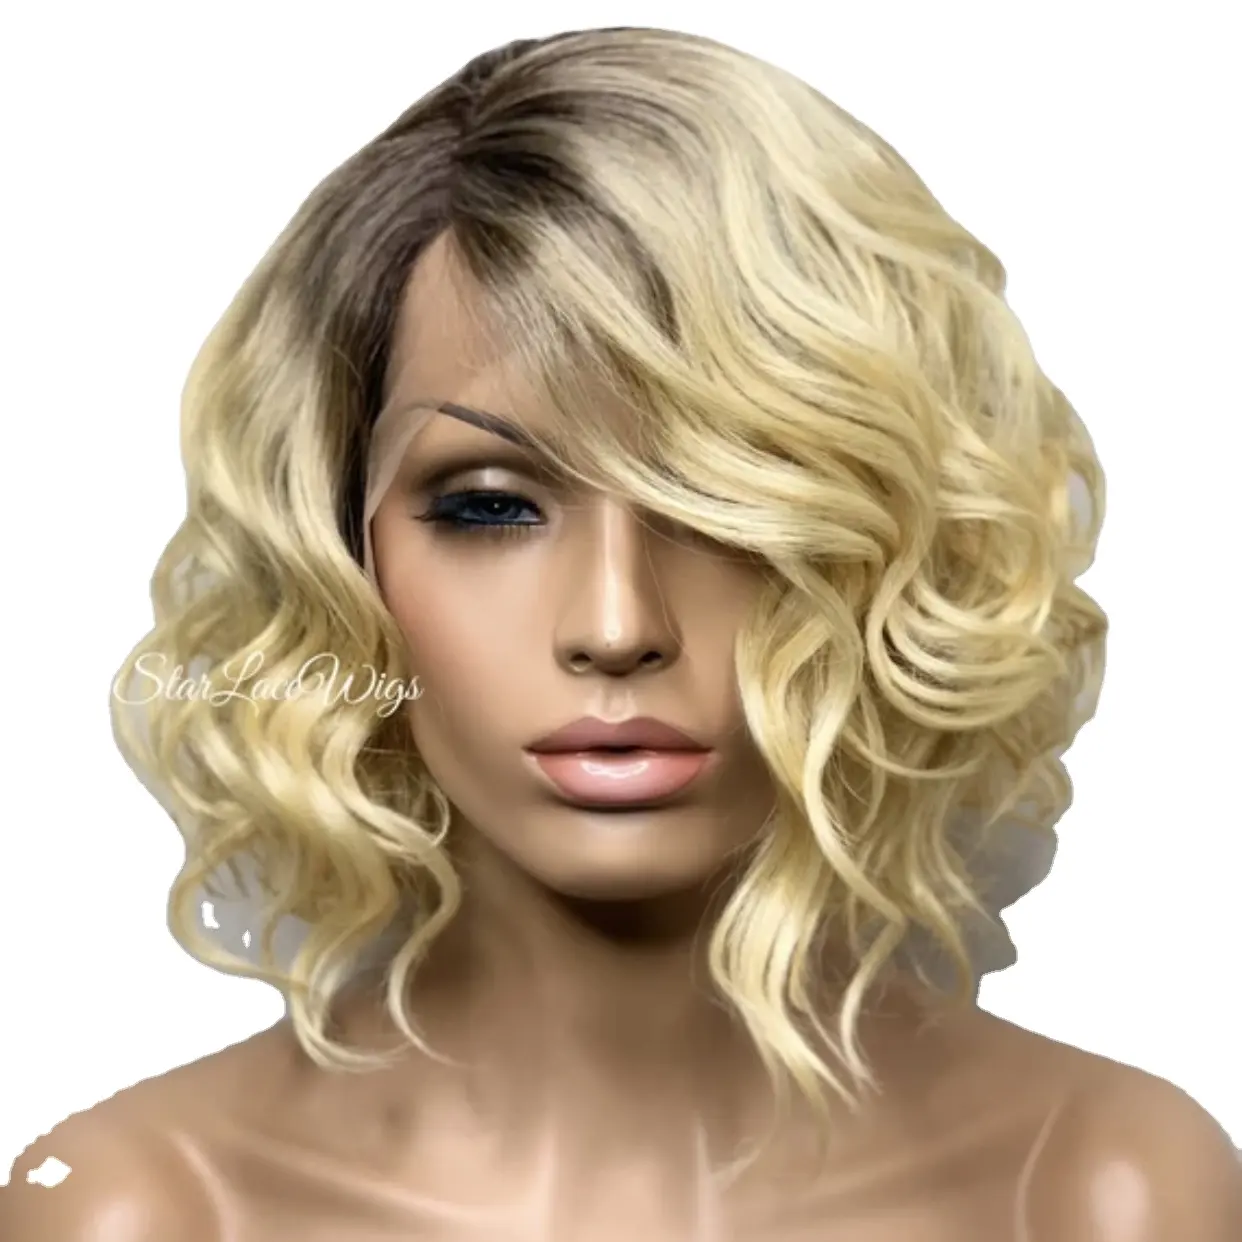 EGG Curly Ombre Blond Brown Cheveux décolorants 12 14 pouces Usine Prix de gros Double Drawn cuticule alignée Cheveux bruts vierges